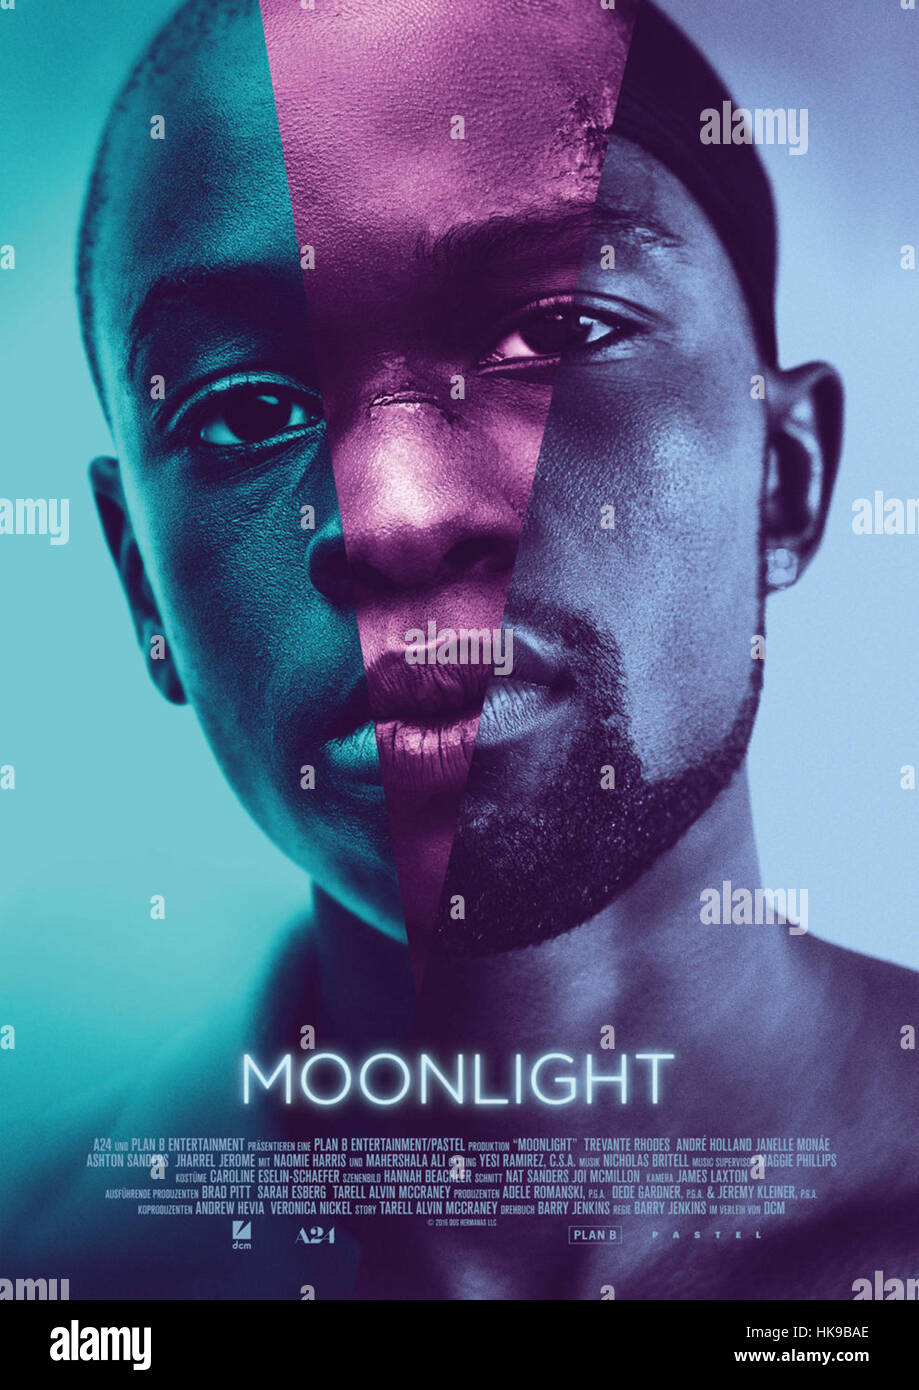 Moonlight movie poster Banque de photographies et d’images à haute